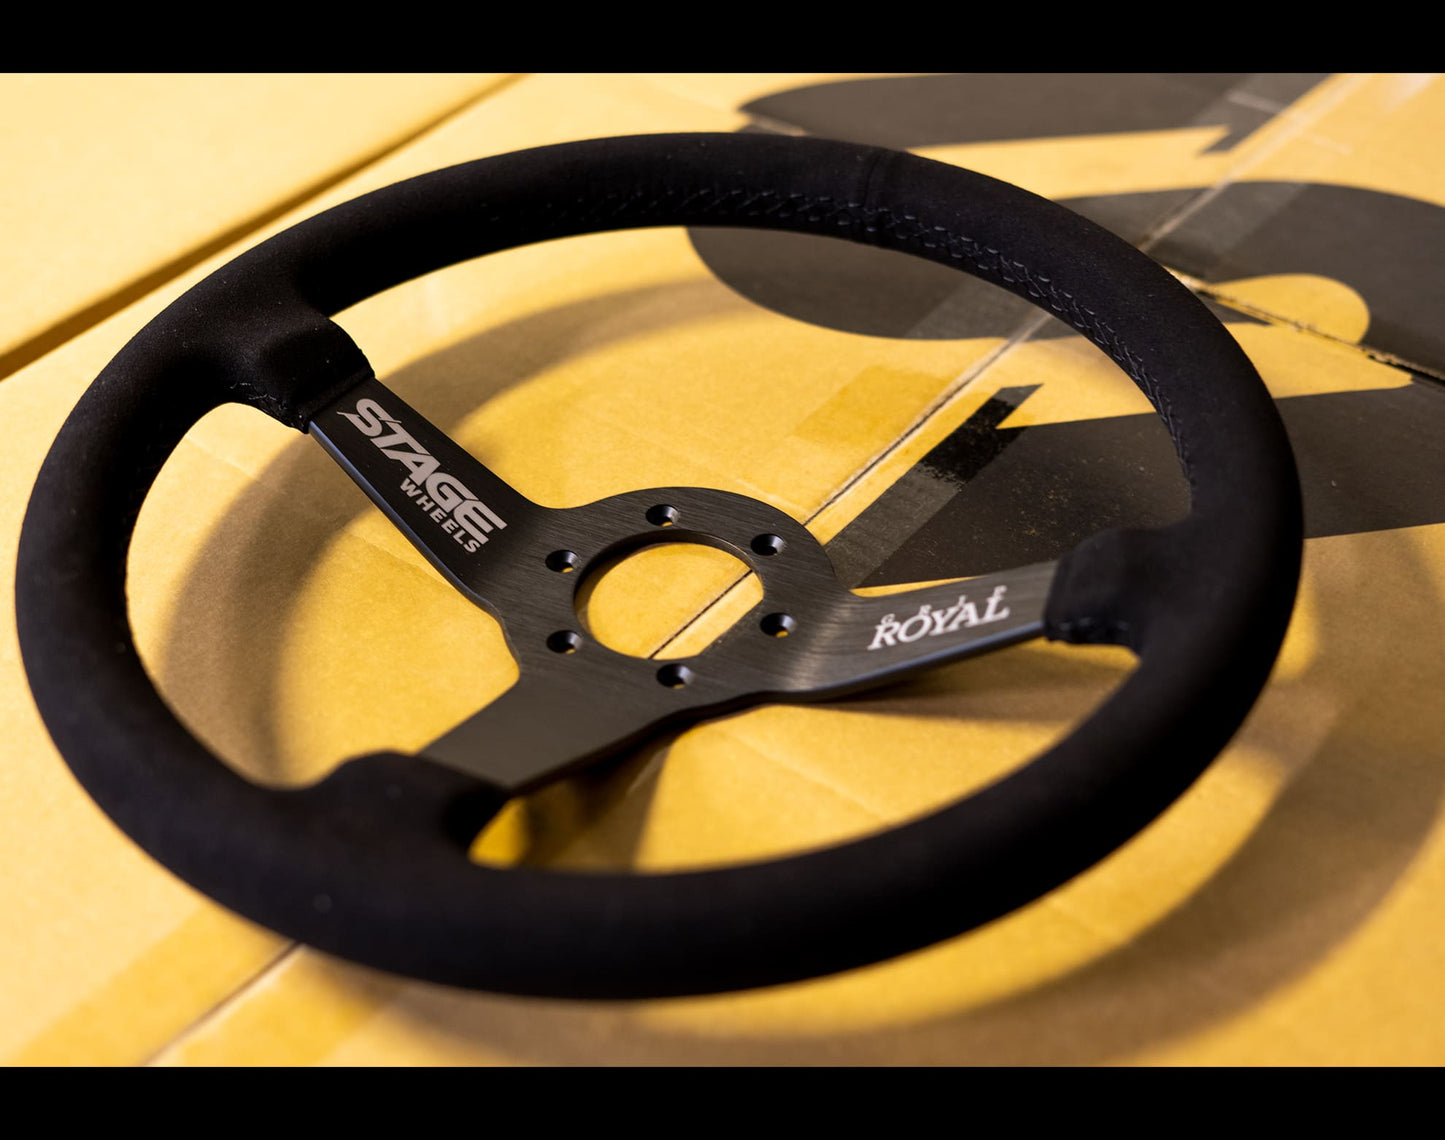 Stage Wheels X Grip Royal Brute Steering Wheel